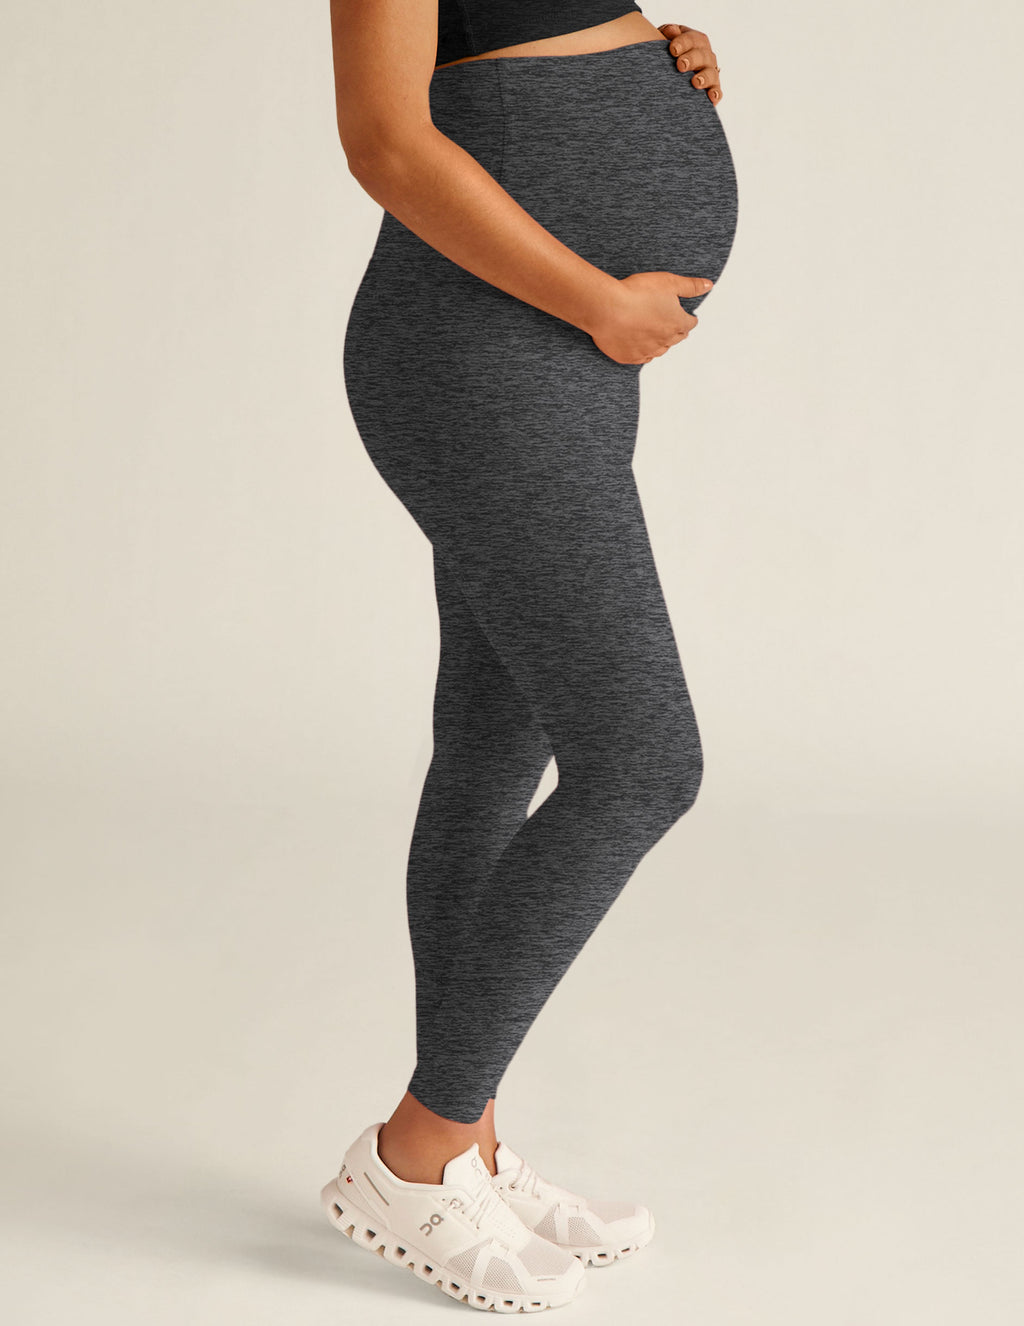 FunMum Thick Maternity Leggings Grey - SALE